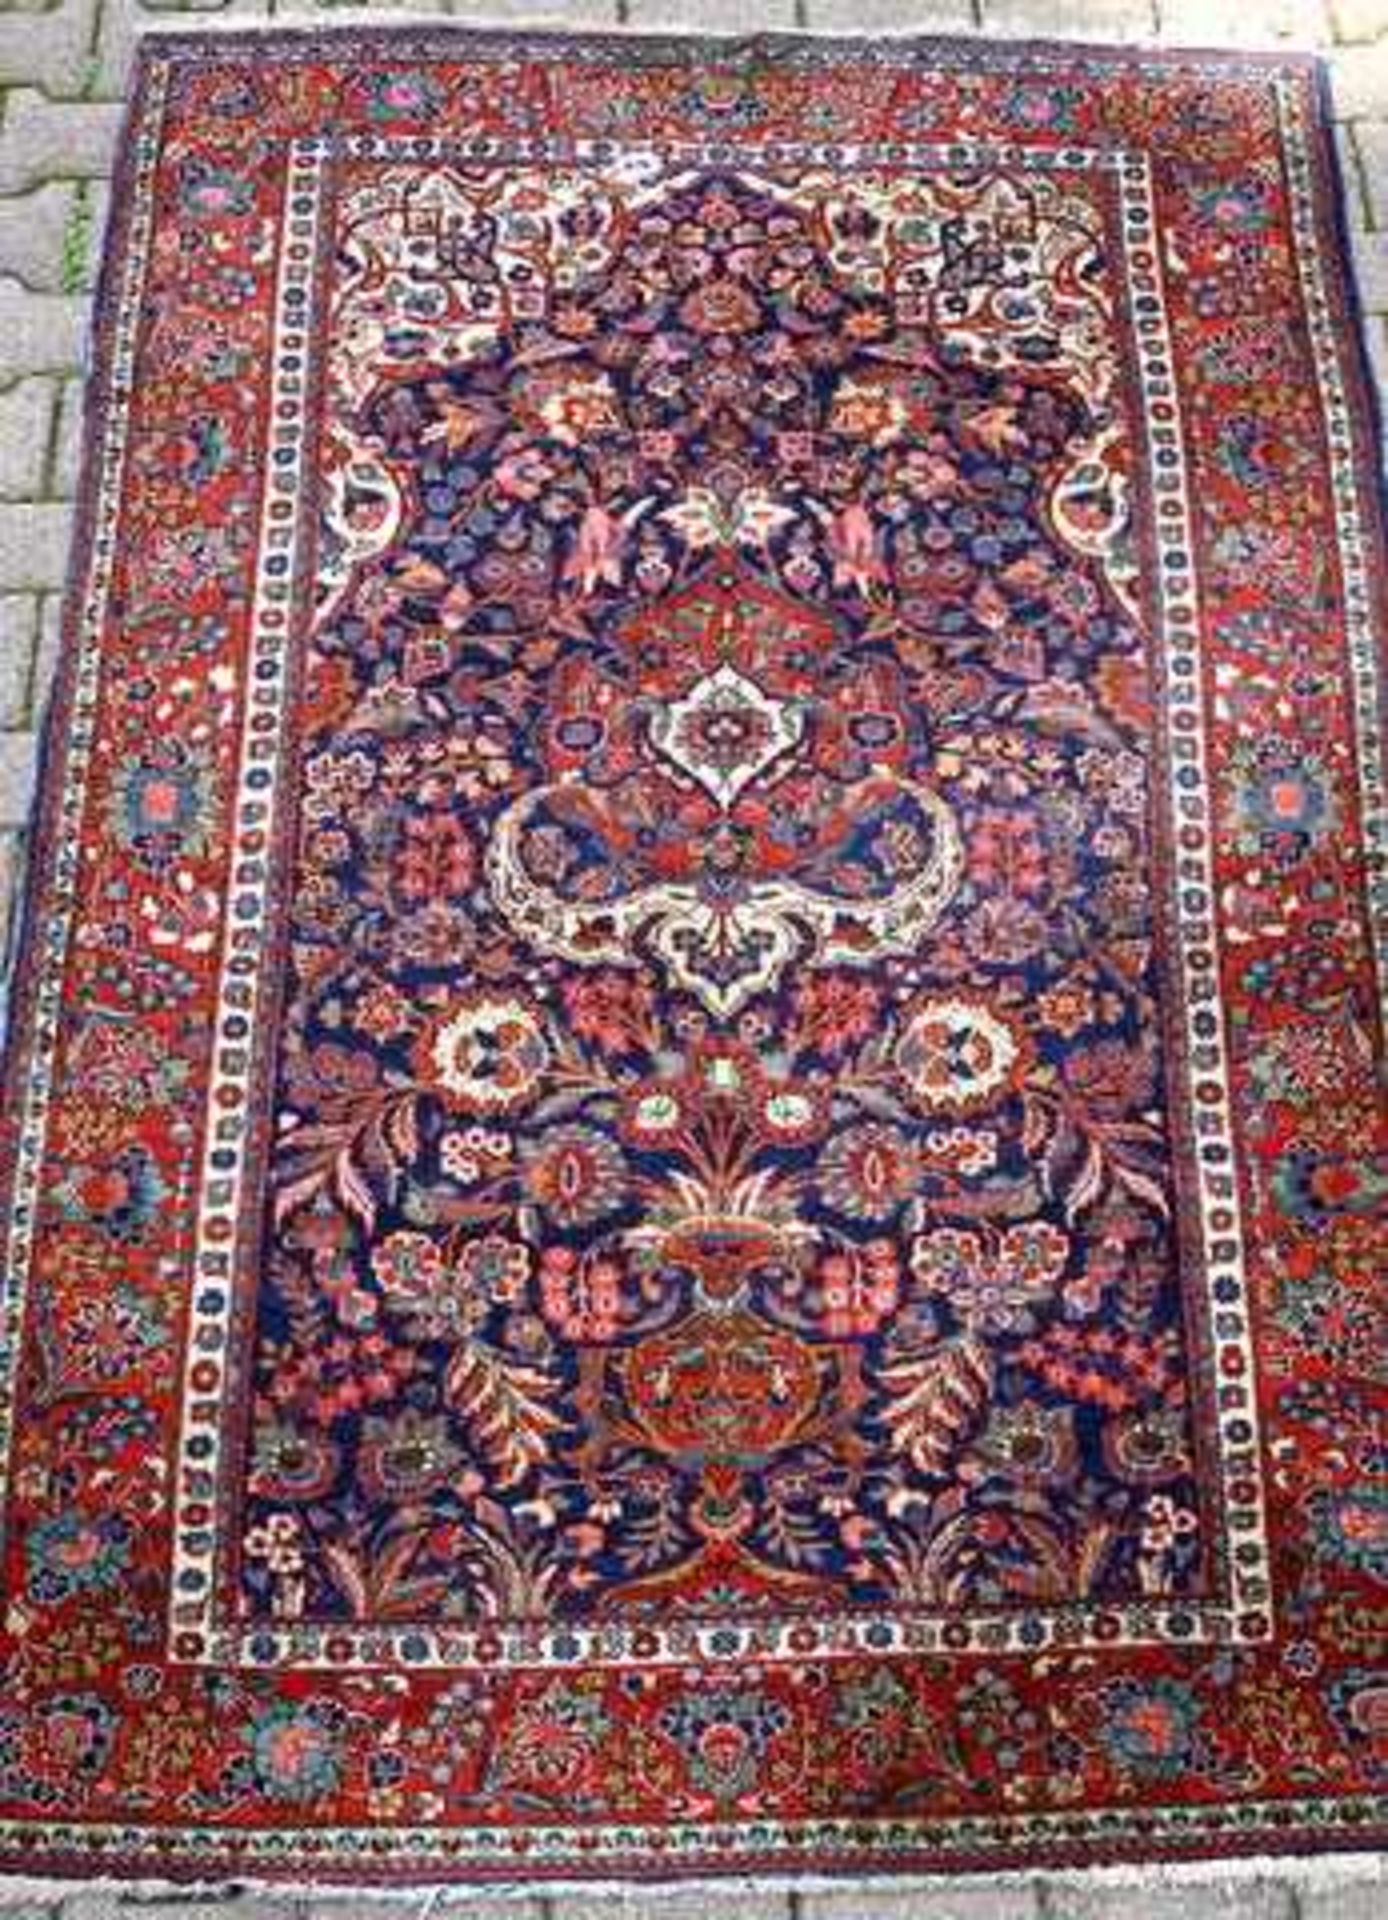 Kleiner persischer GebetsteppichWolle auf Wolle, Natur und Anilinfarben, min. verschmutzt, ein